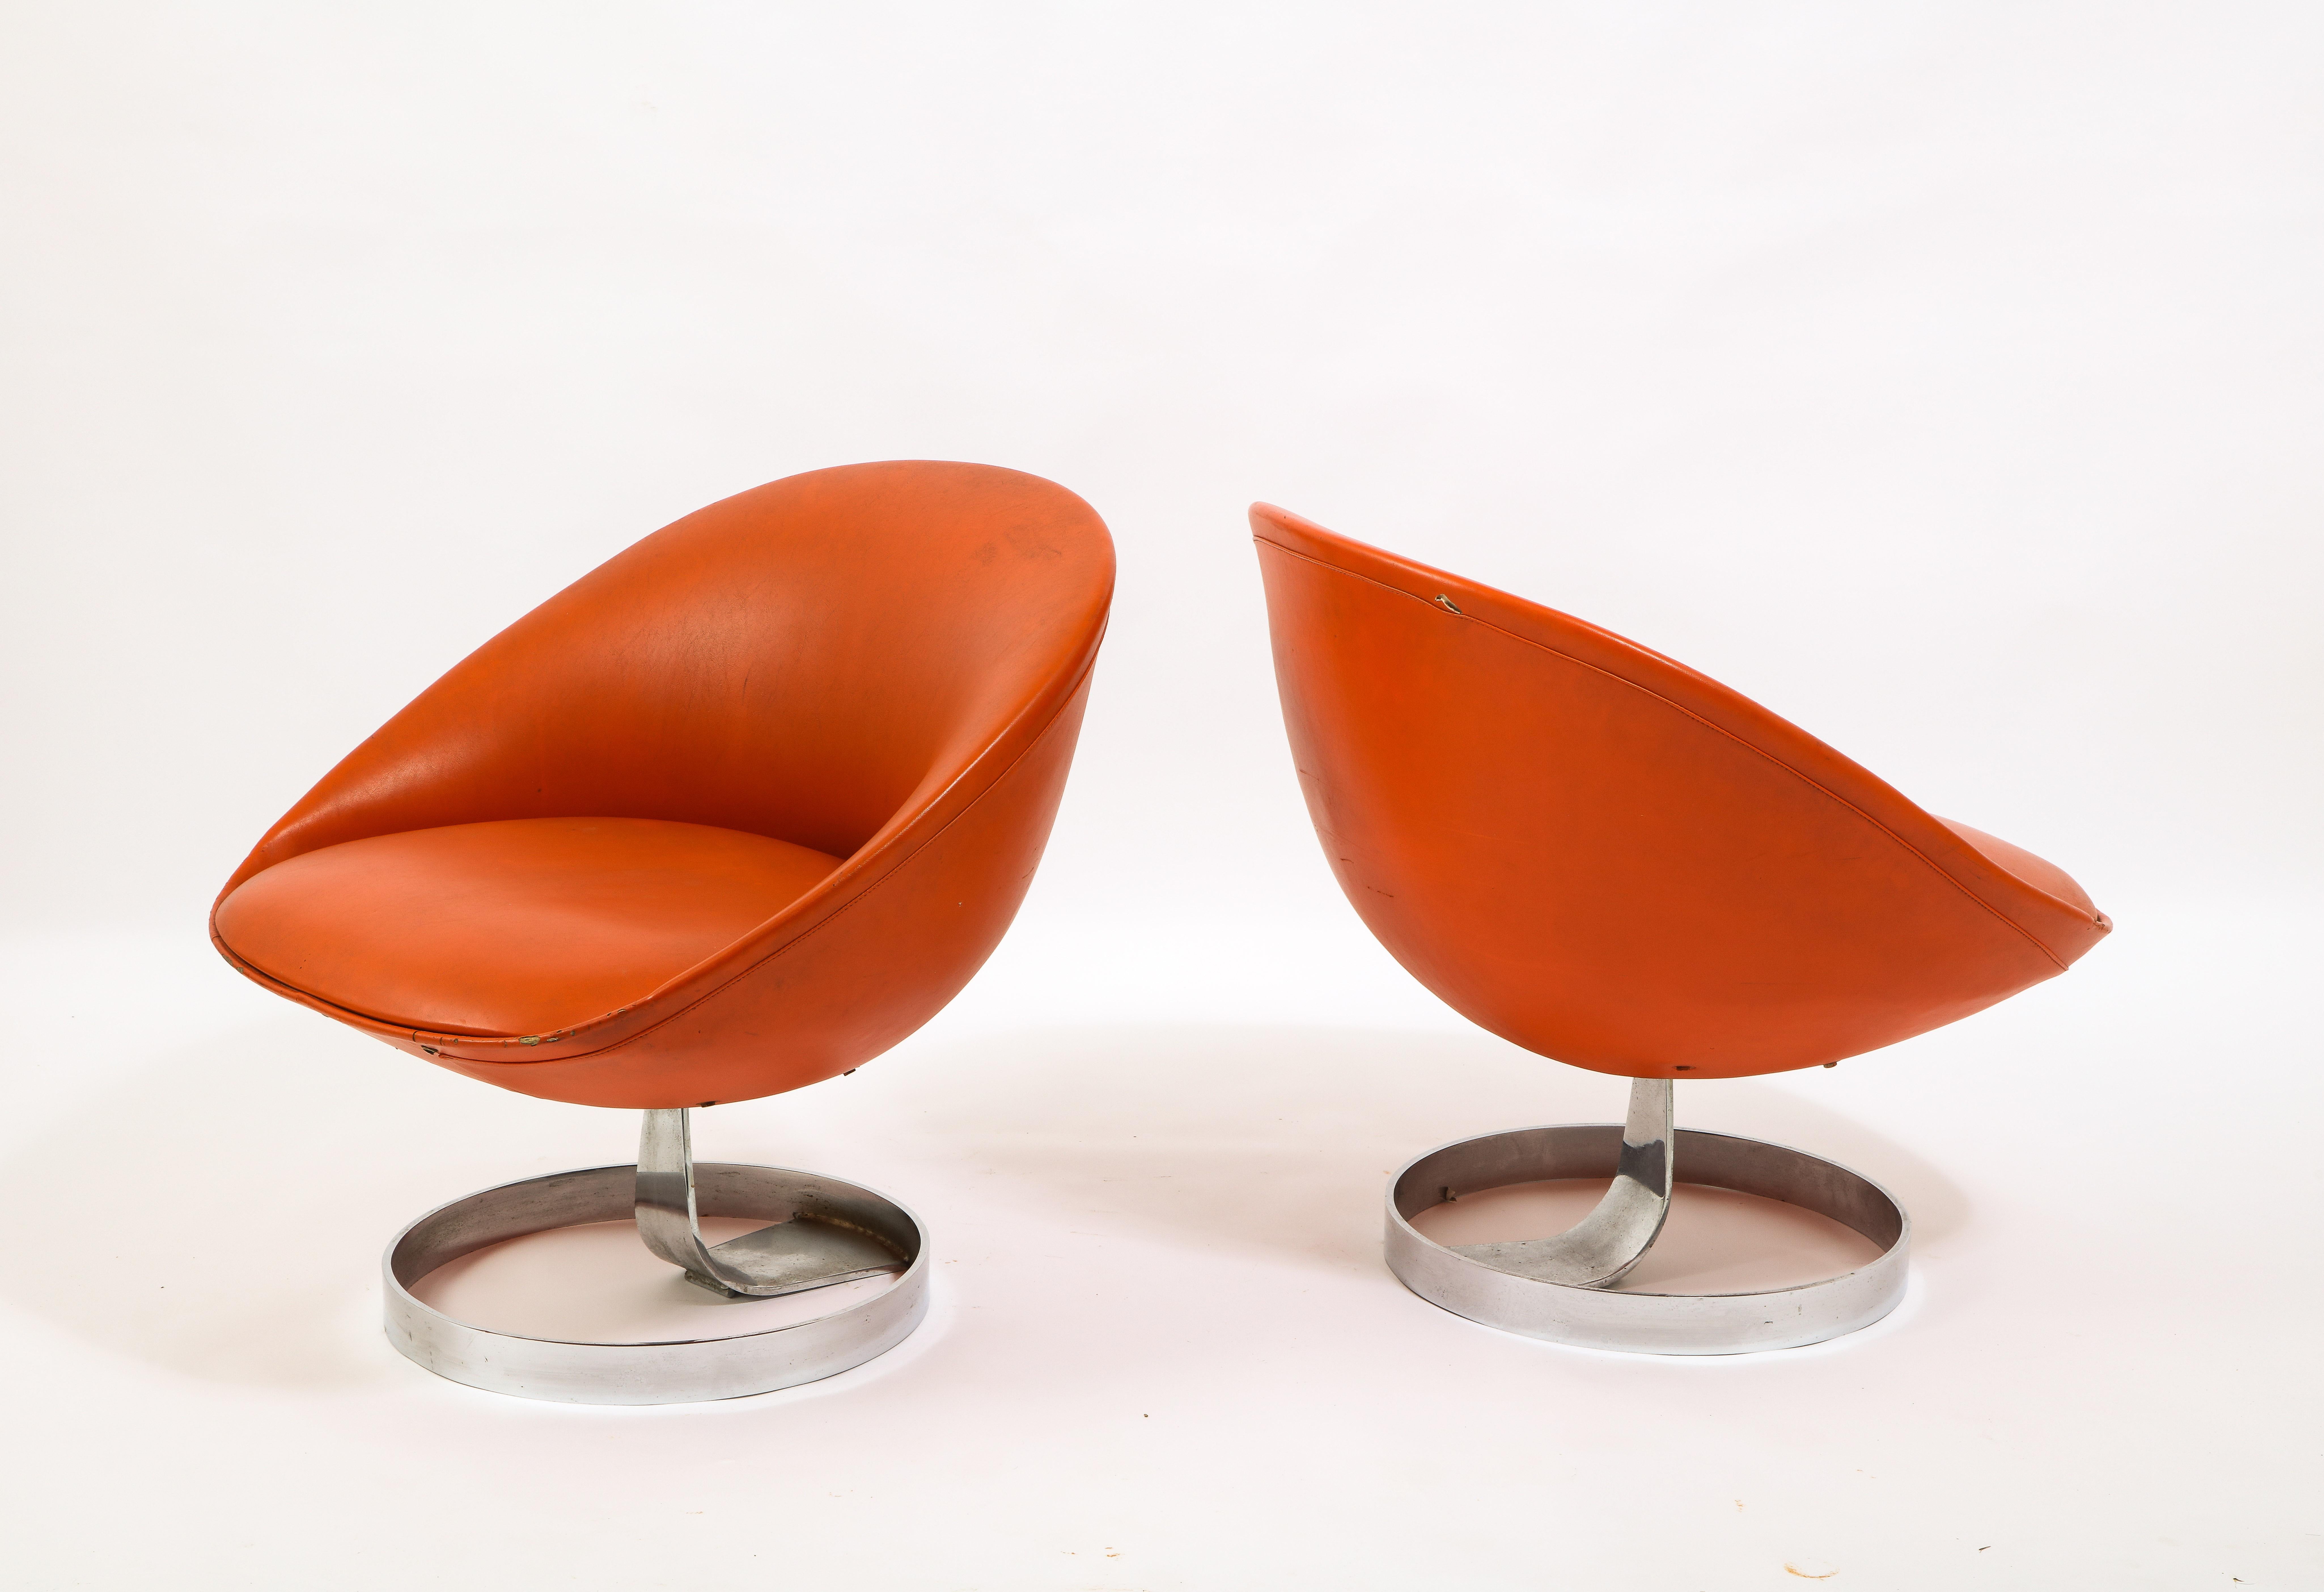 Seltenes Paar K1 Lounge Chairs für Alpha Industries. Maurice Calka ist bekannt für seine ausgefallenen Bumerang-Schreibtische aus Fiberglas, aber dieses Stuhlpaar ist ein perfektes Beispiel für seine Kreativität. Das Gehäuse besteht aus geformtem